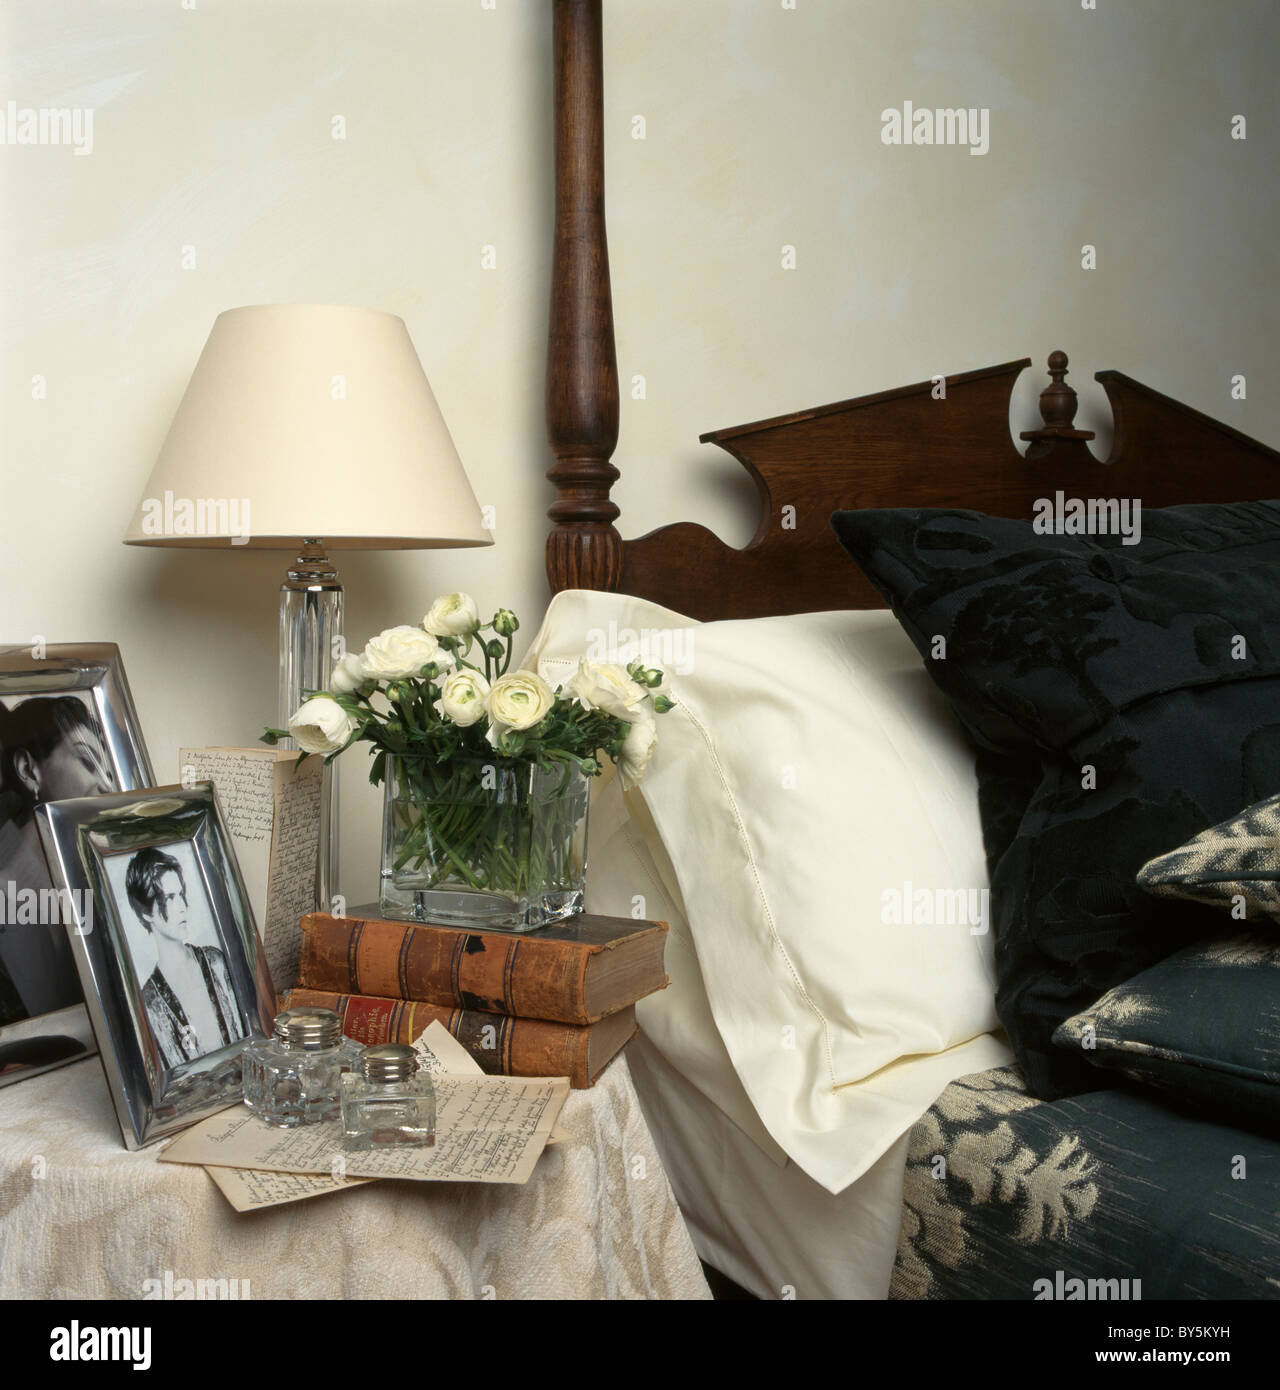 Close-up di fotografie incorniciate e crema lampada sul comodino accanto al letto con cuscino bianco e modellato bed-cover Foto Stock